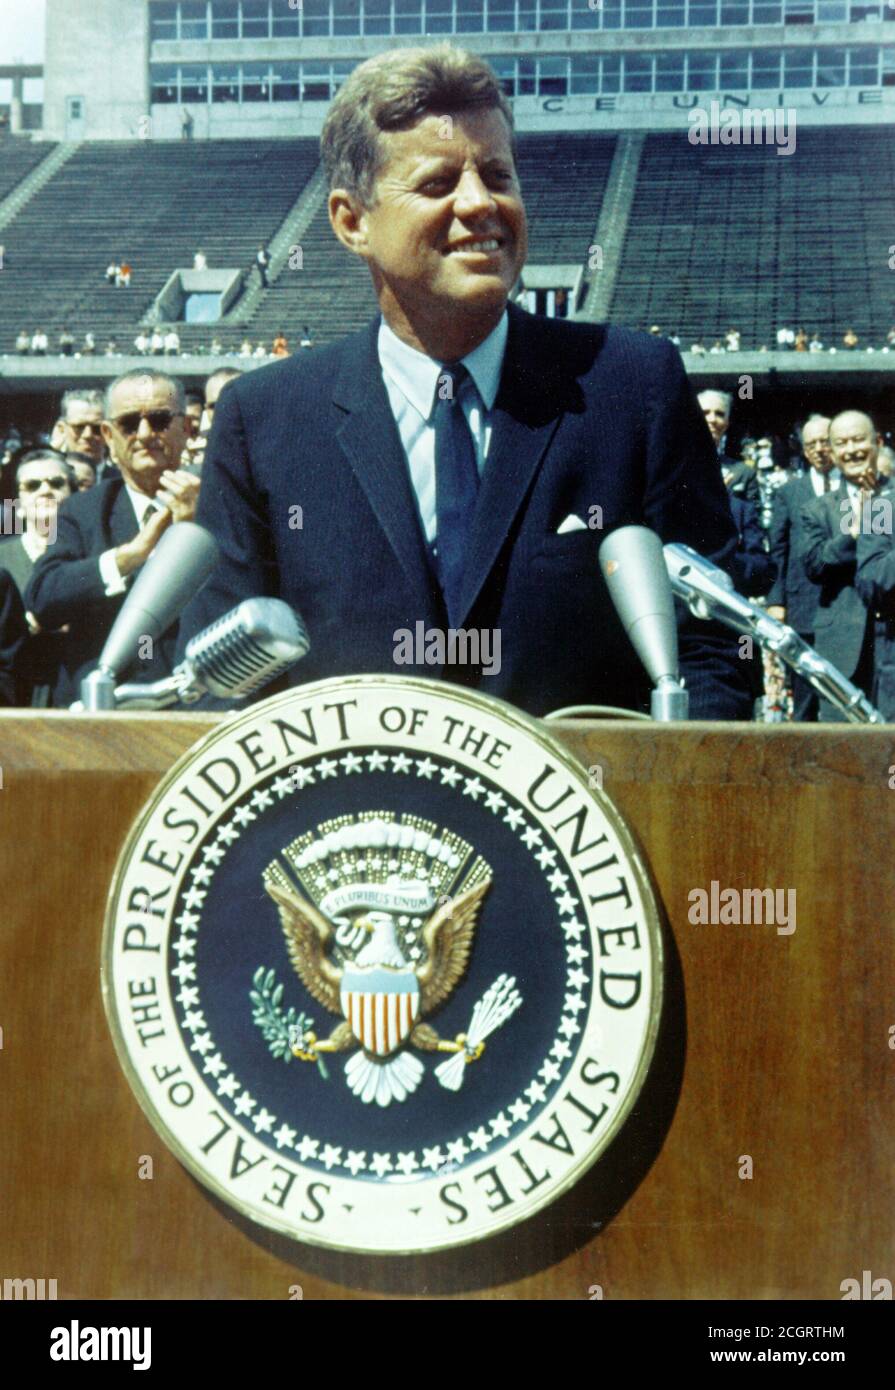 John F. Kennedy Rede an der Rice University über die Raumfahrt September 12, 1962. Präsident Kennedy spricht vor einer Menge von 35,000 Menschen an der Rice University im Fußballfeld. Stockfoto